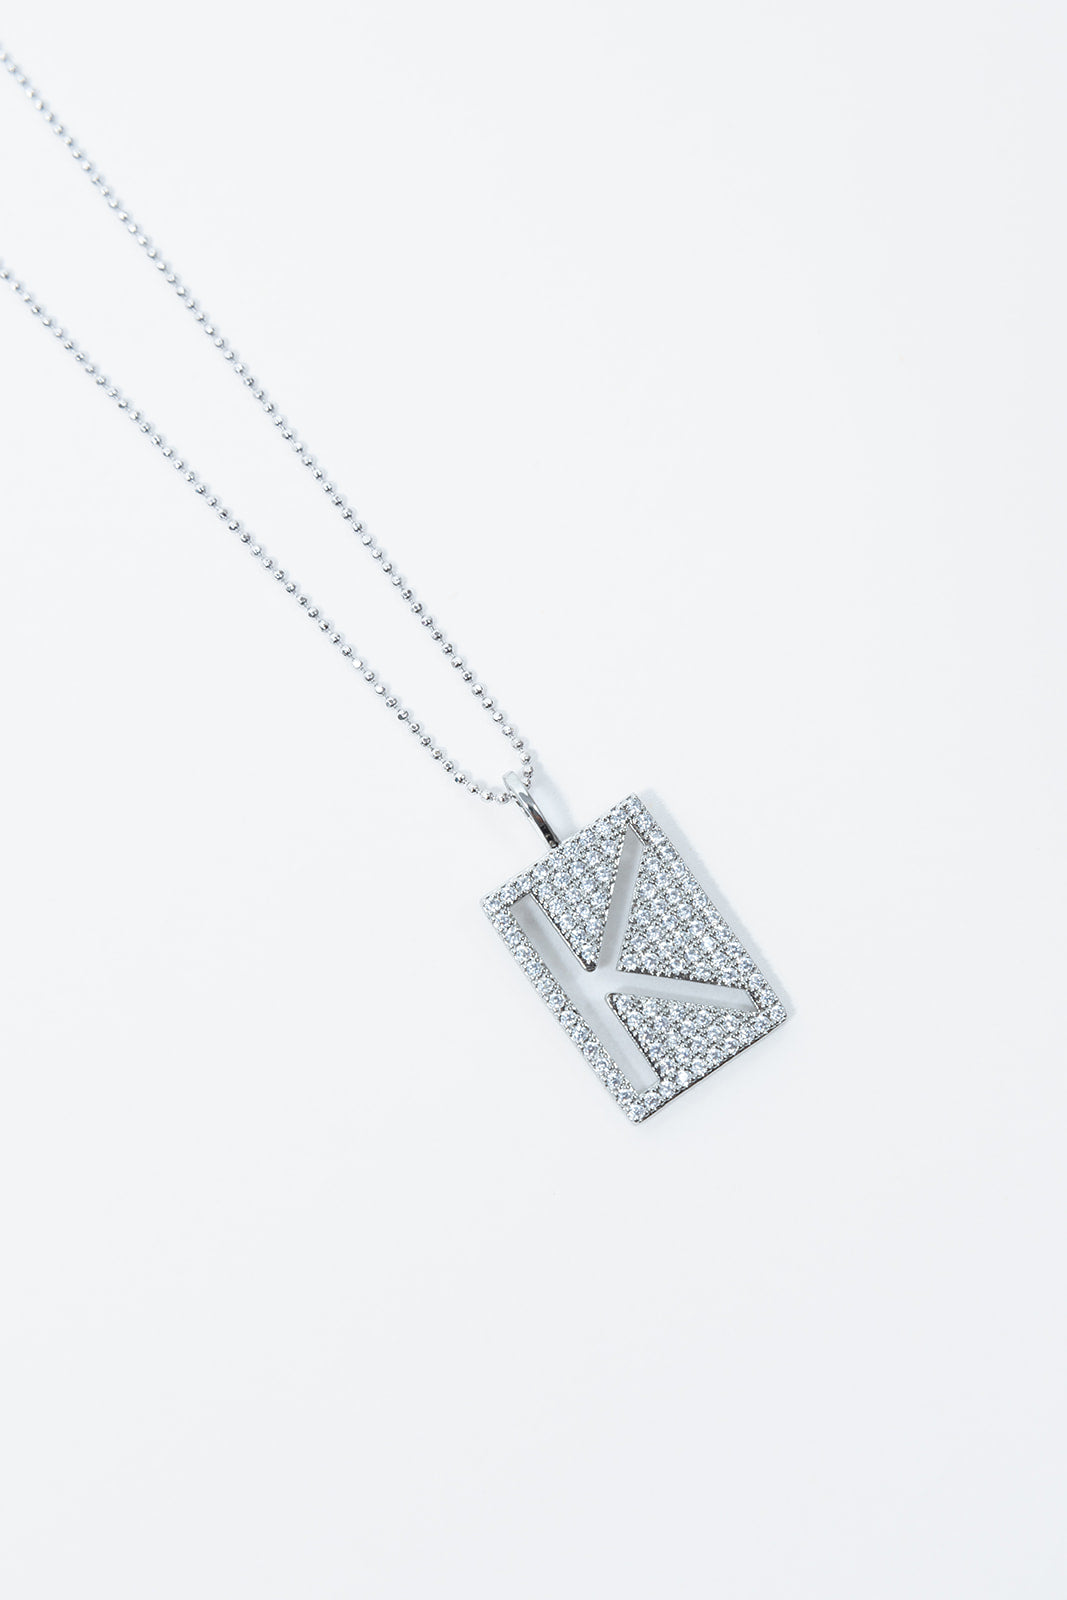 Louis Vuitton LV & Me 'Letter F' Pendant Necklace - Brass Pendant